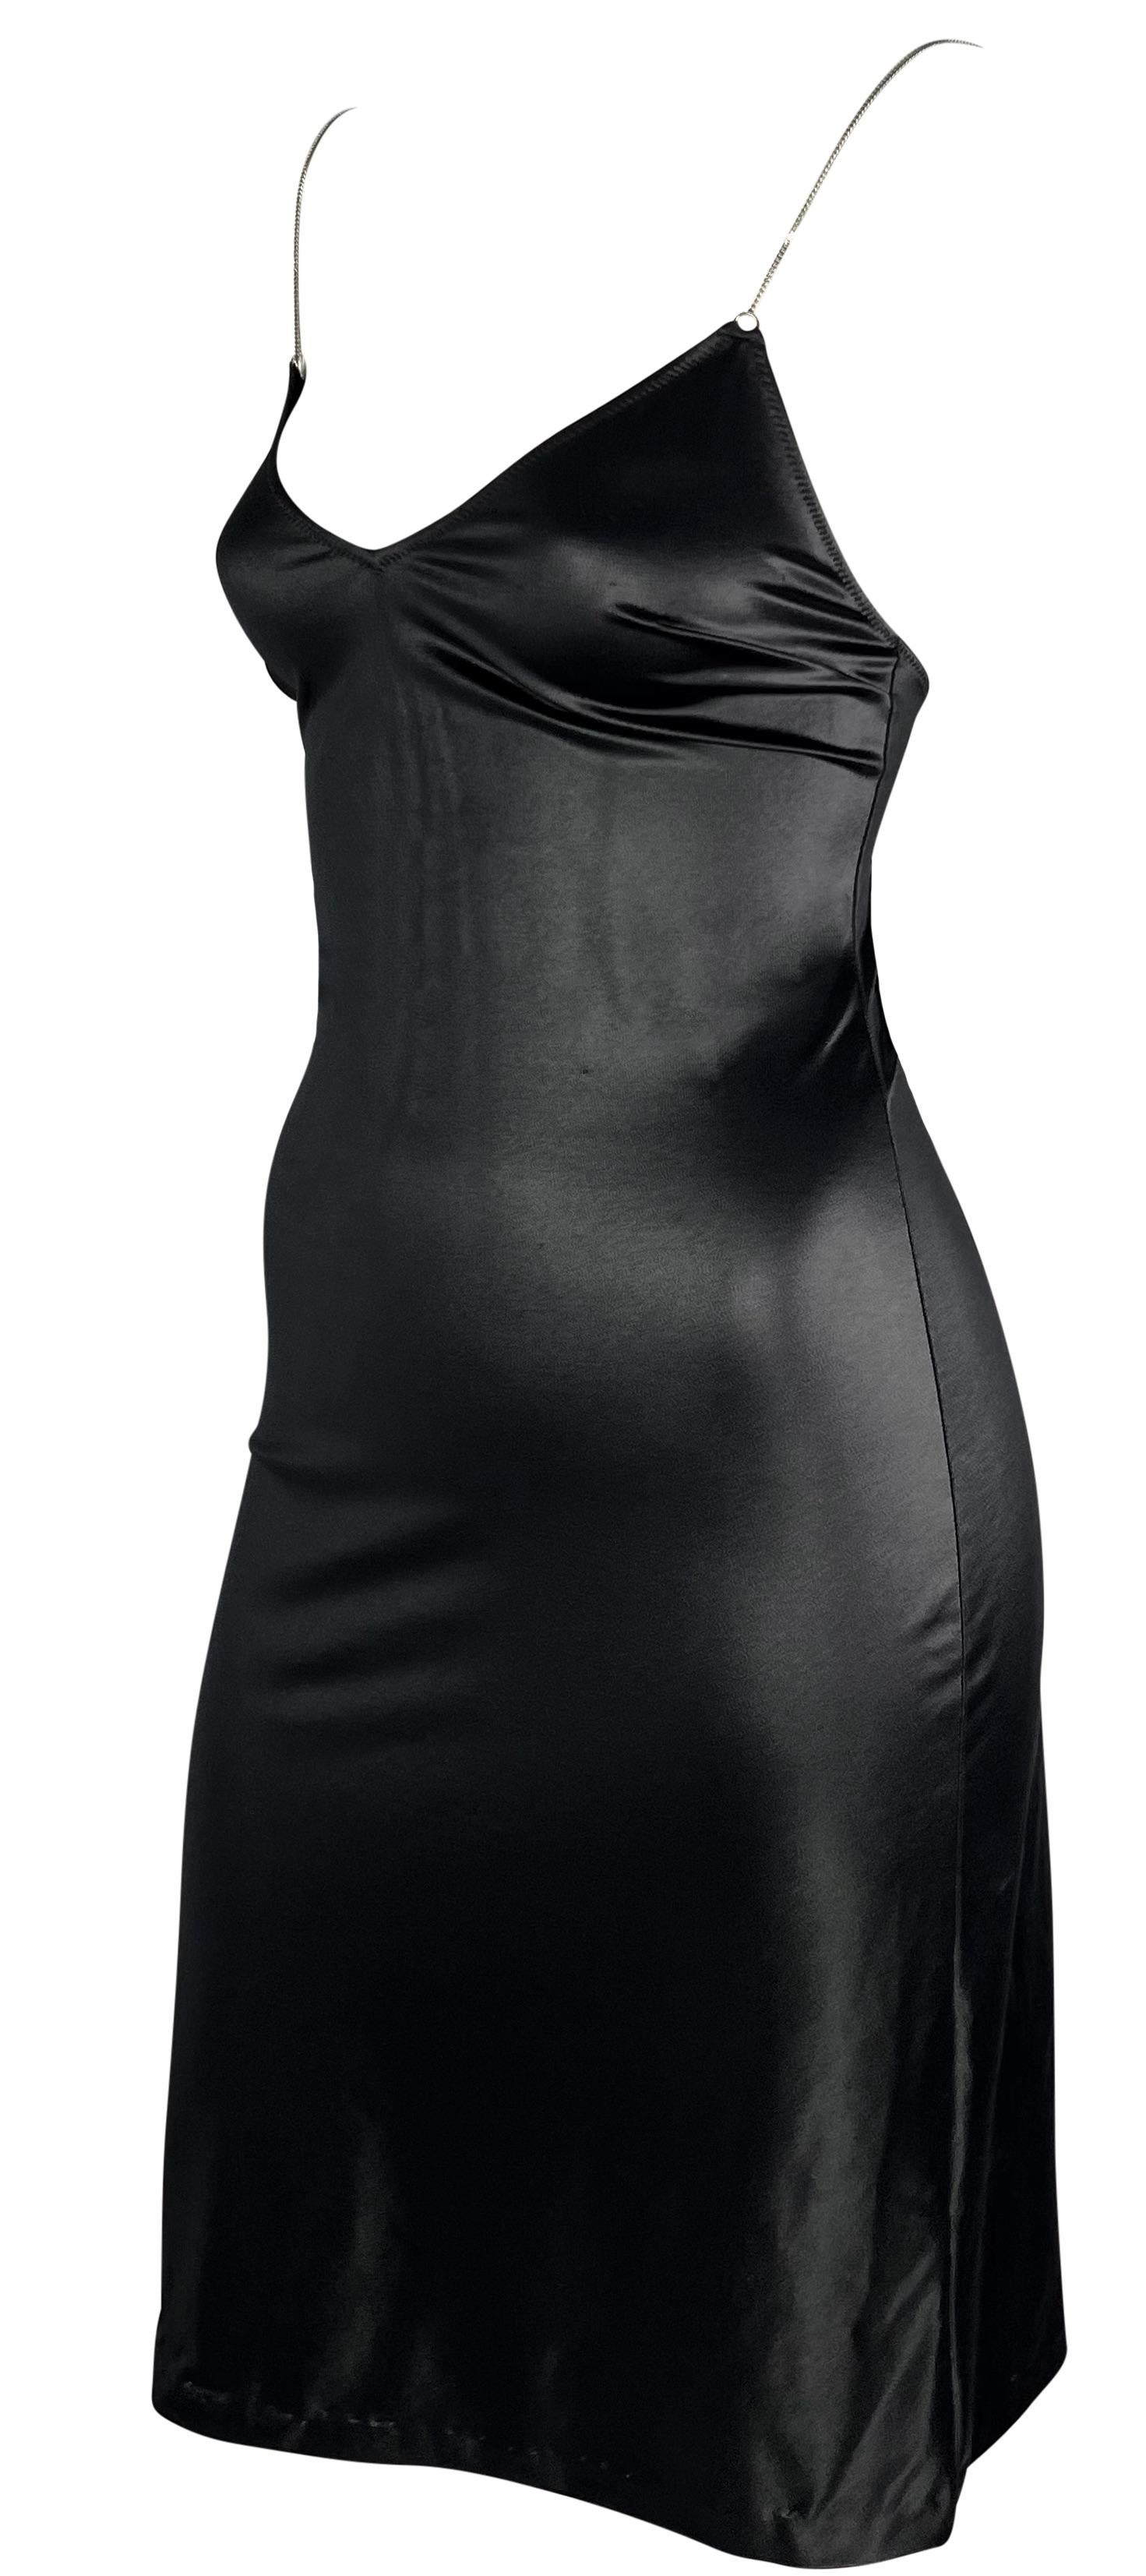 Cette mini robe noire brillante Dolce & Gabbana épouse parfaitement le corps. Cette robe à effet mouillé des années 1990 présente un décolleté et un dos plongeants. La robe est complétée par de fines bretelles en chaîne de couleur argentée.